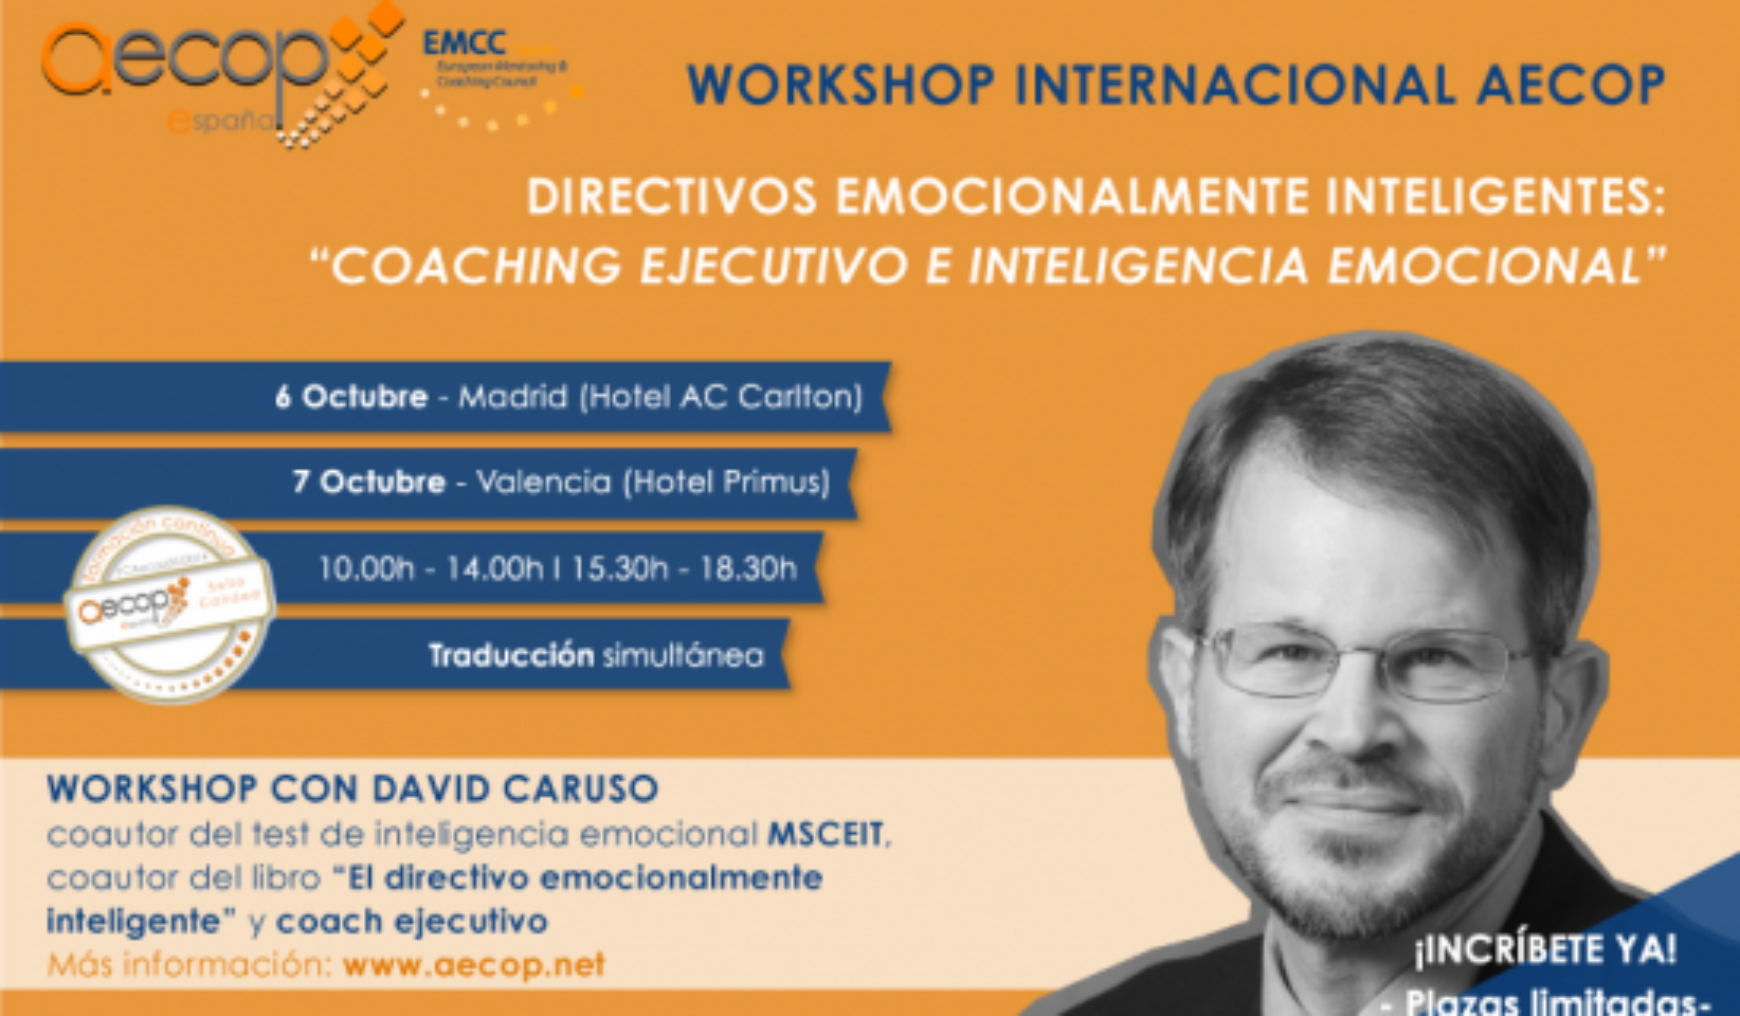 Workshop con David Caruso en Valencia el 7 de Octubre organizado por Aecop